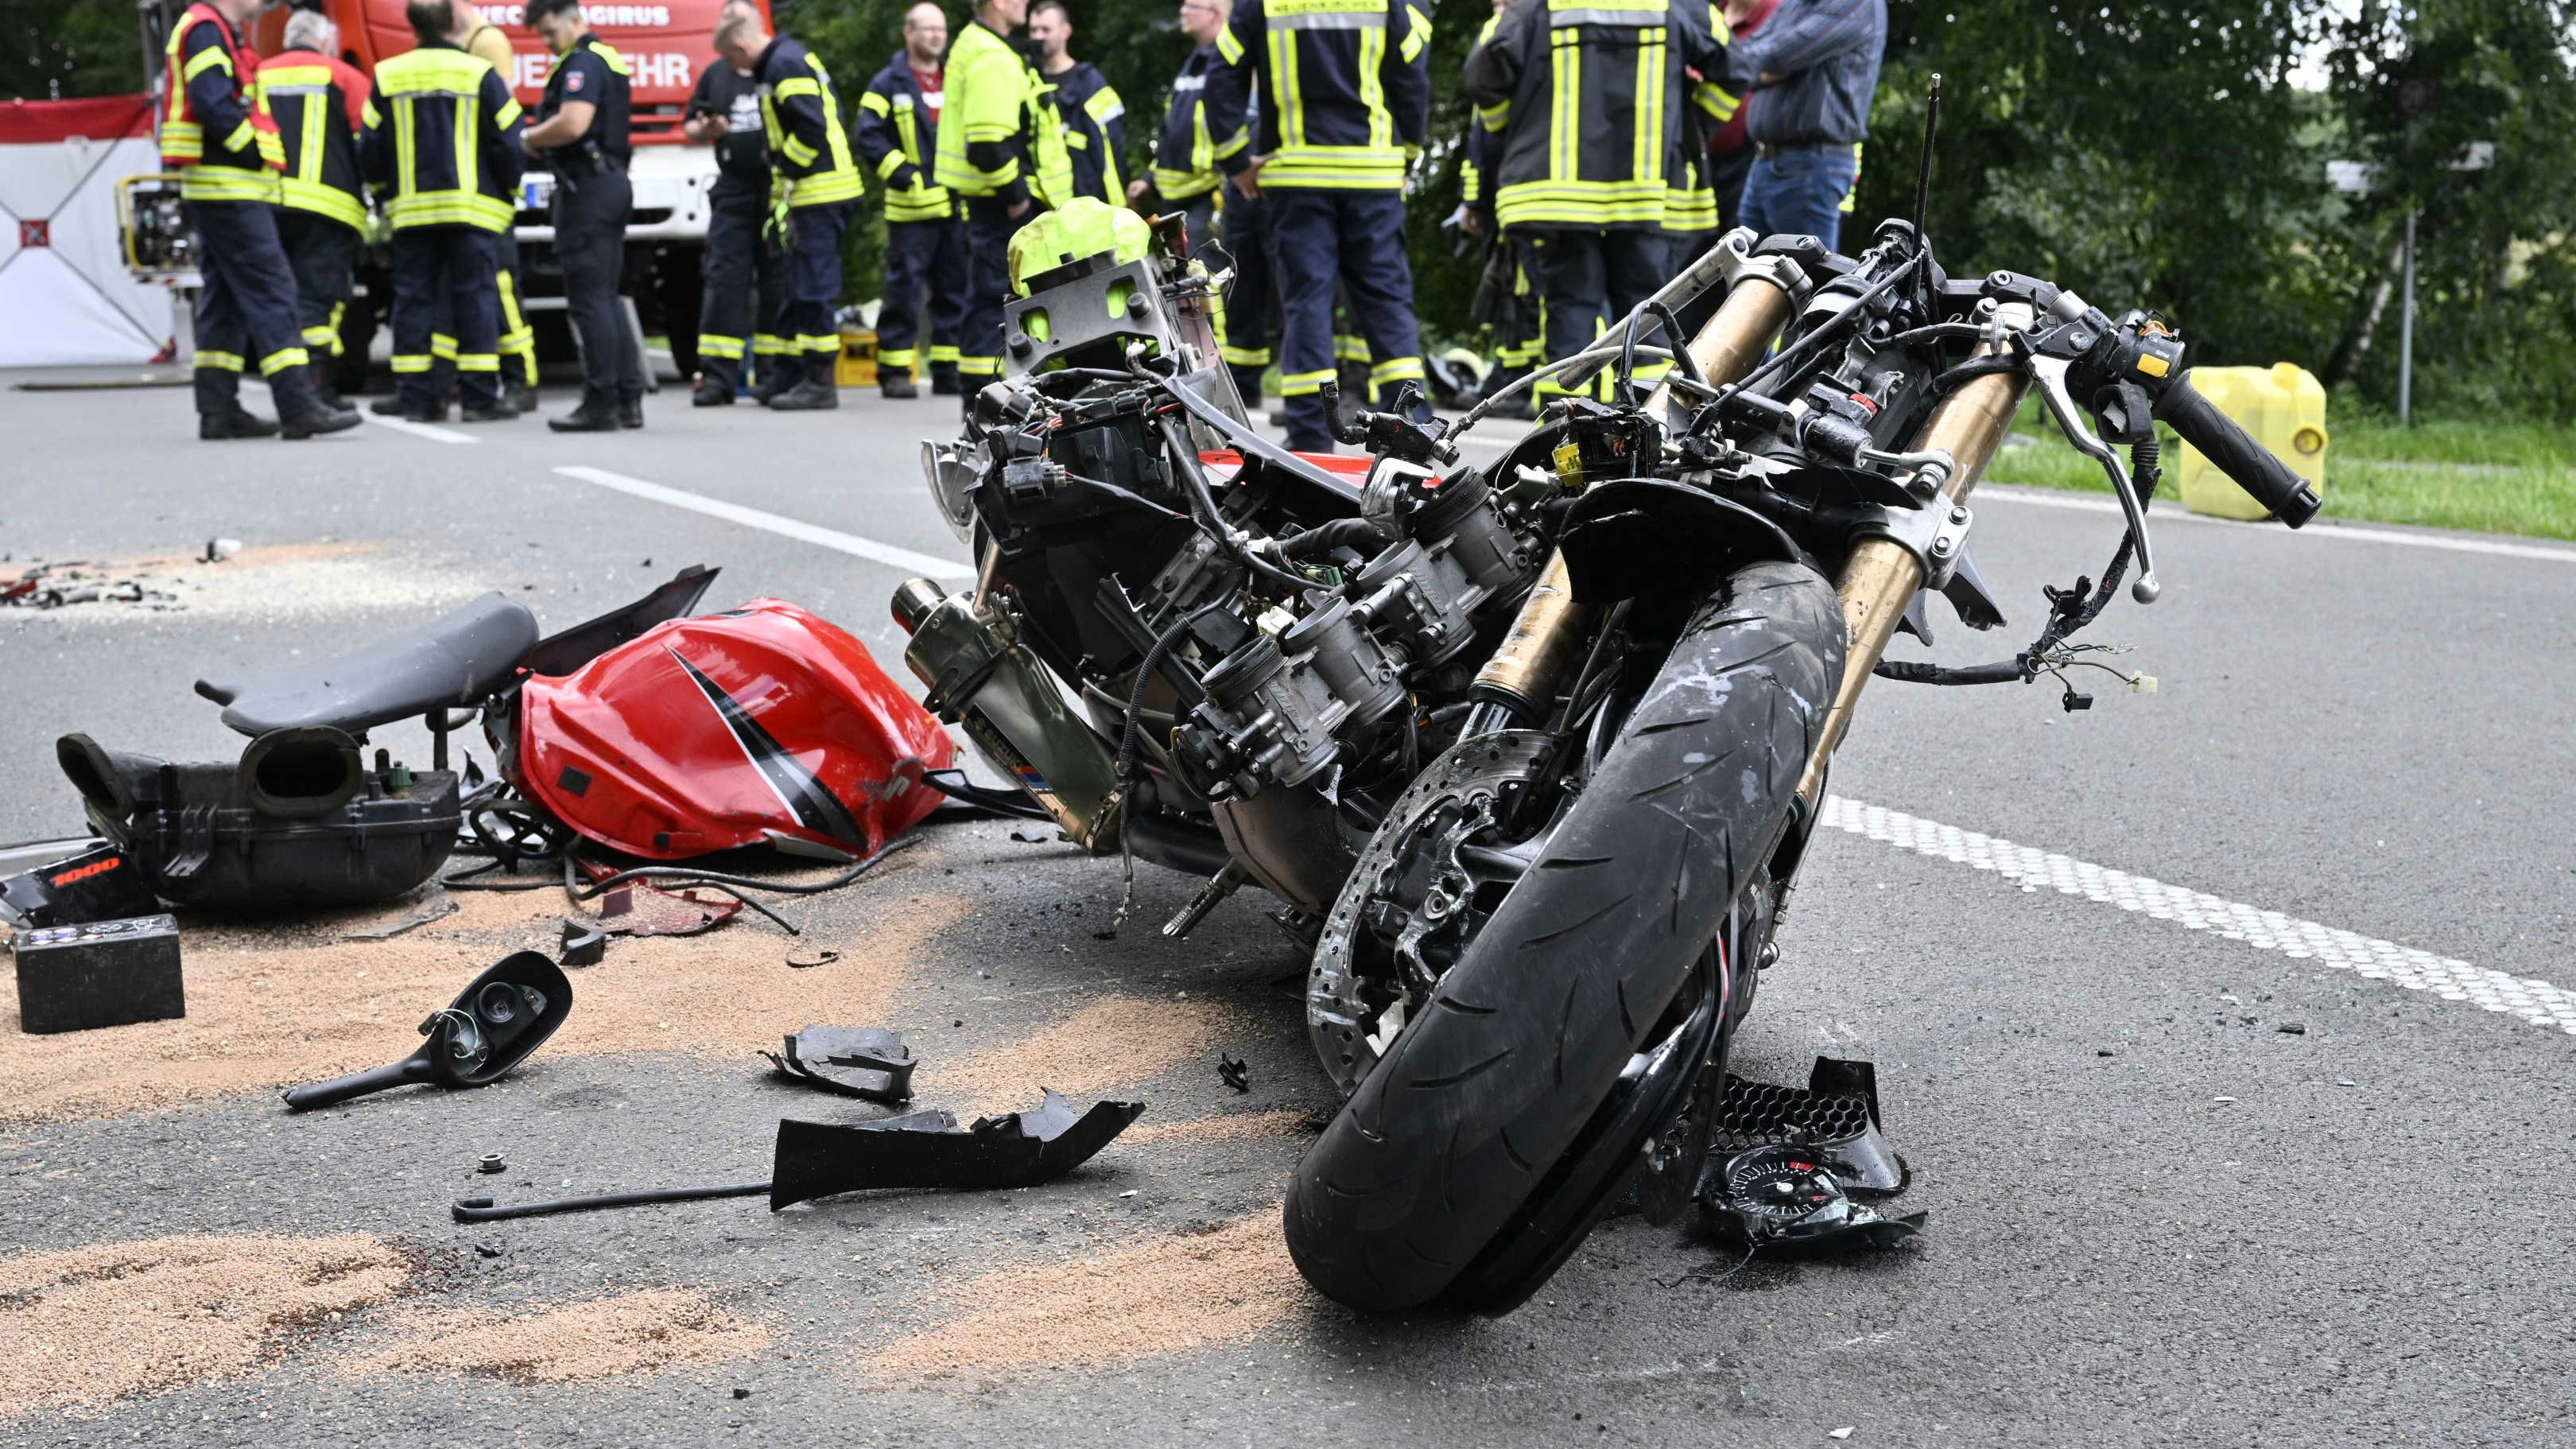 Das völlig zerstörte Motorrad an der Unfallstelle. Foto: M. Niehues